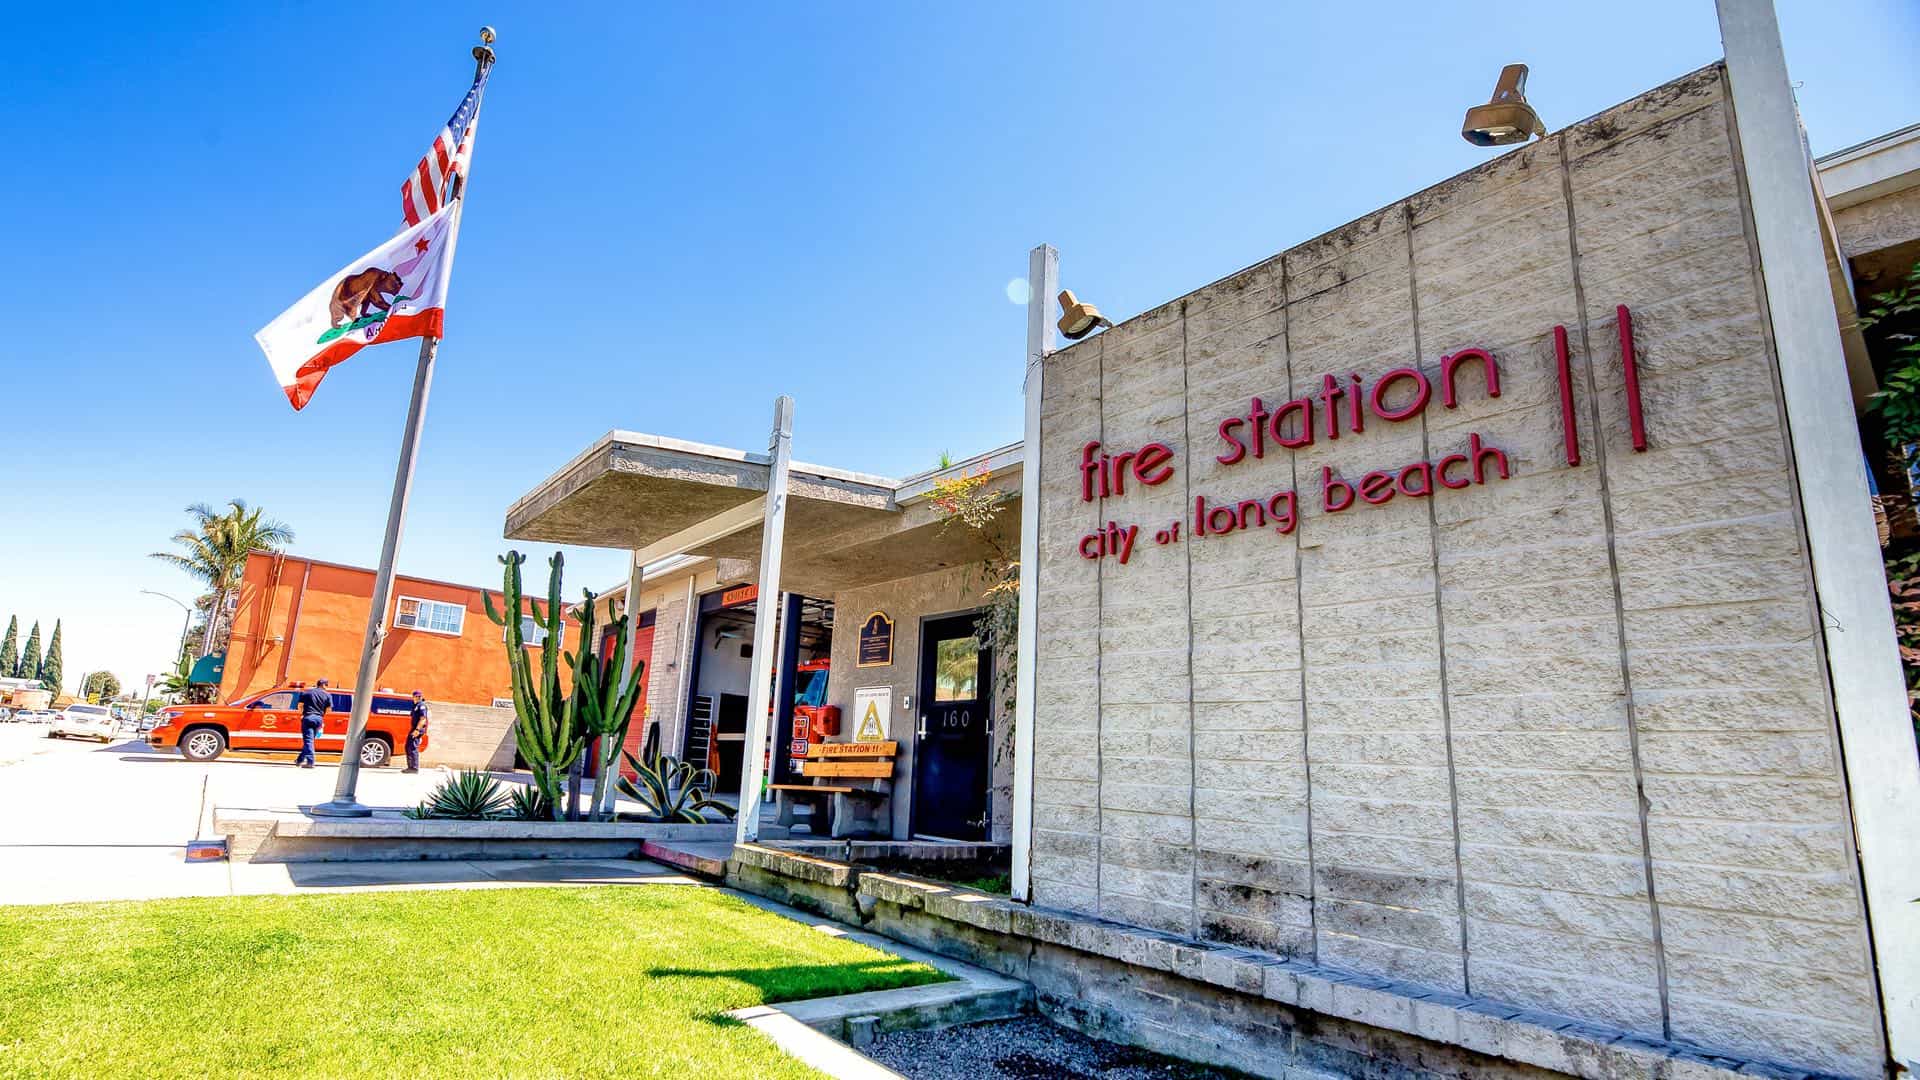 Fire Station 11 Long Beach, CA